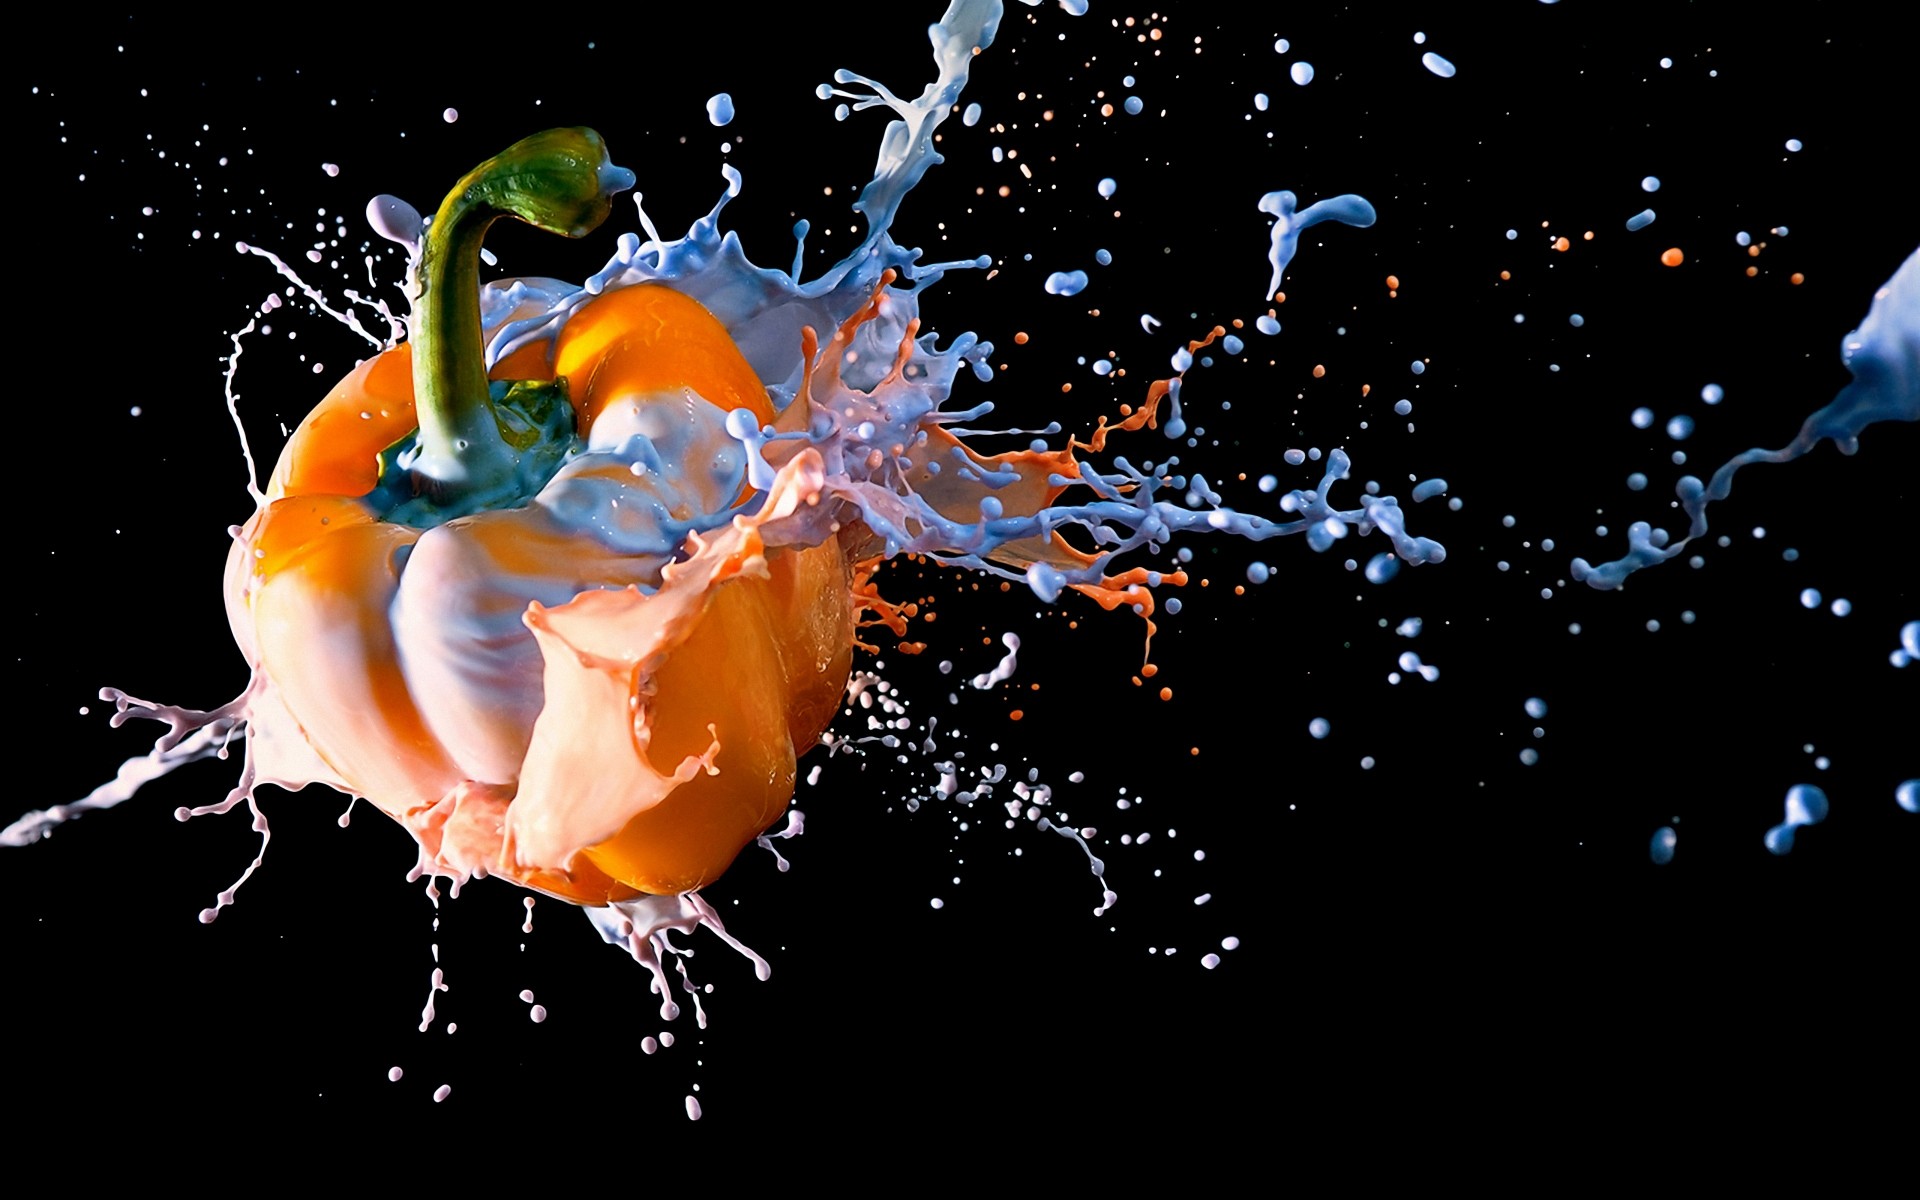 фотообработка всплеск падение движения воды мокрый подводный пузырь рабочего стола свет аннотация жидкость поток капли цвет дизайн фантазия искусство